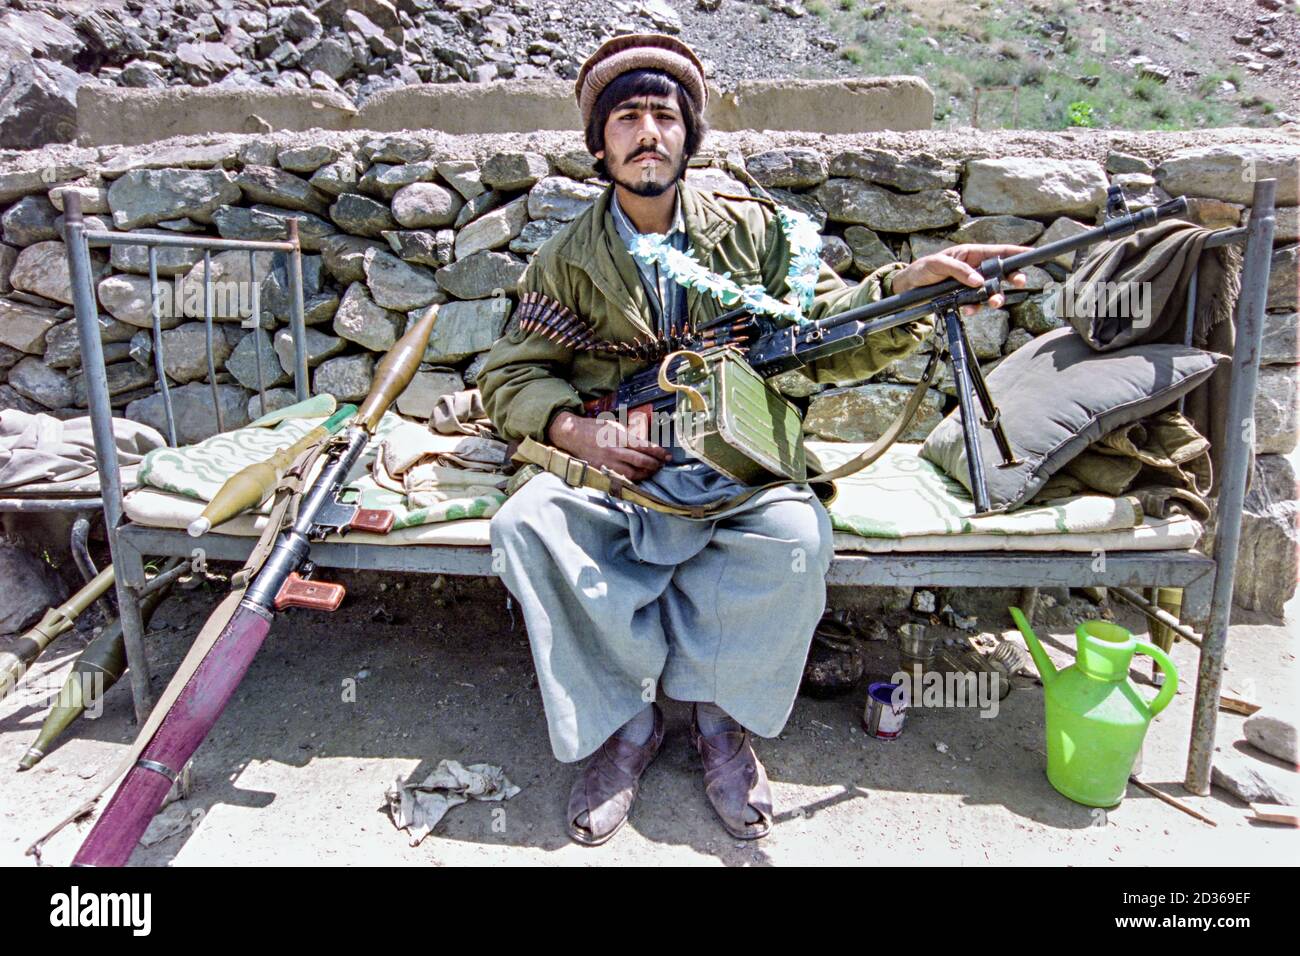 Un combattant afghan de guérilla mujahidin pose avec sa mitrailleuse PK fabriquée par les Soviets et un lanceur RPG dans une base rebelle pendant la guerre civile afghane le 11 mai 1989 dans la vallée de Paghman, en Afghanistan. Banque D'Images